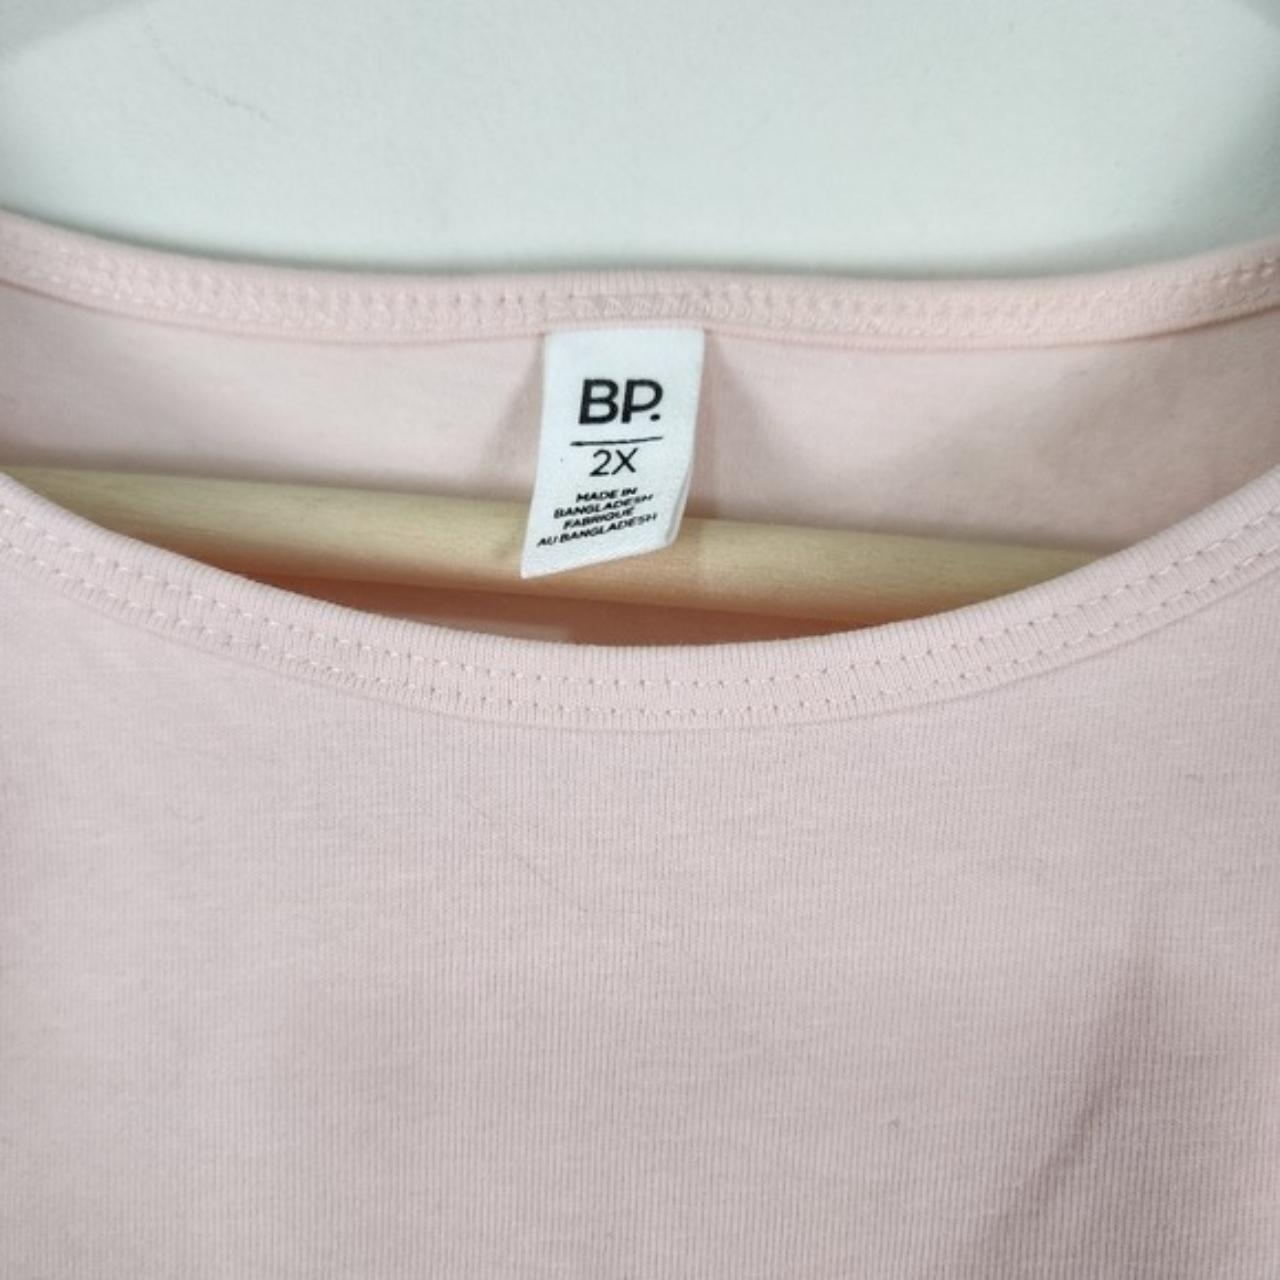 BP womens cropped top plus Sz 2X short sleeve pink... - Depop